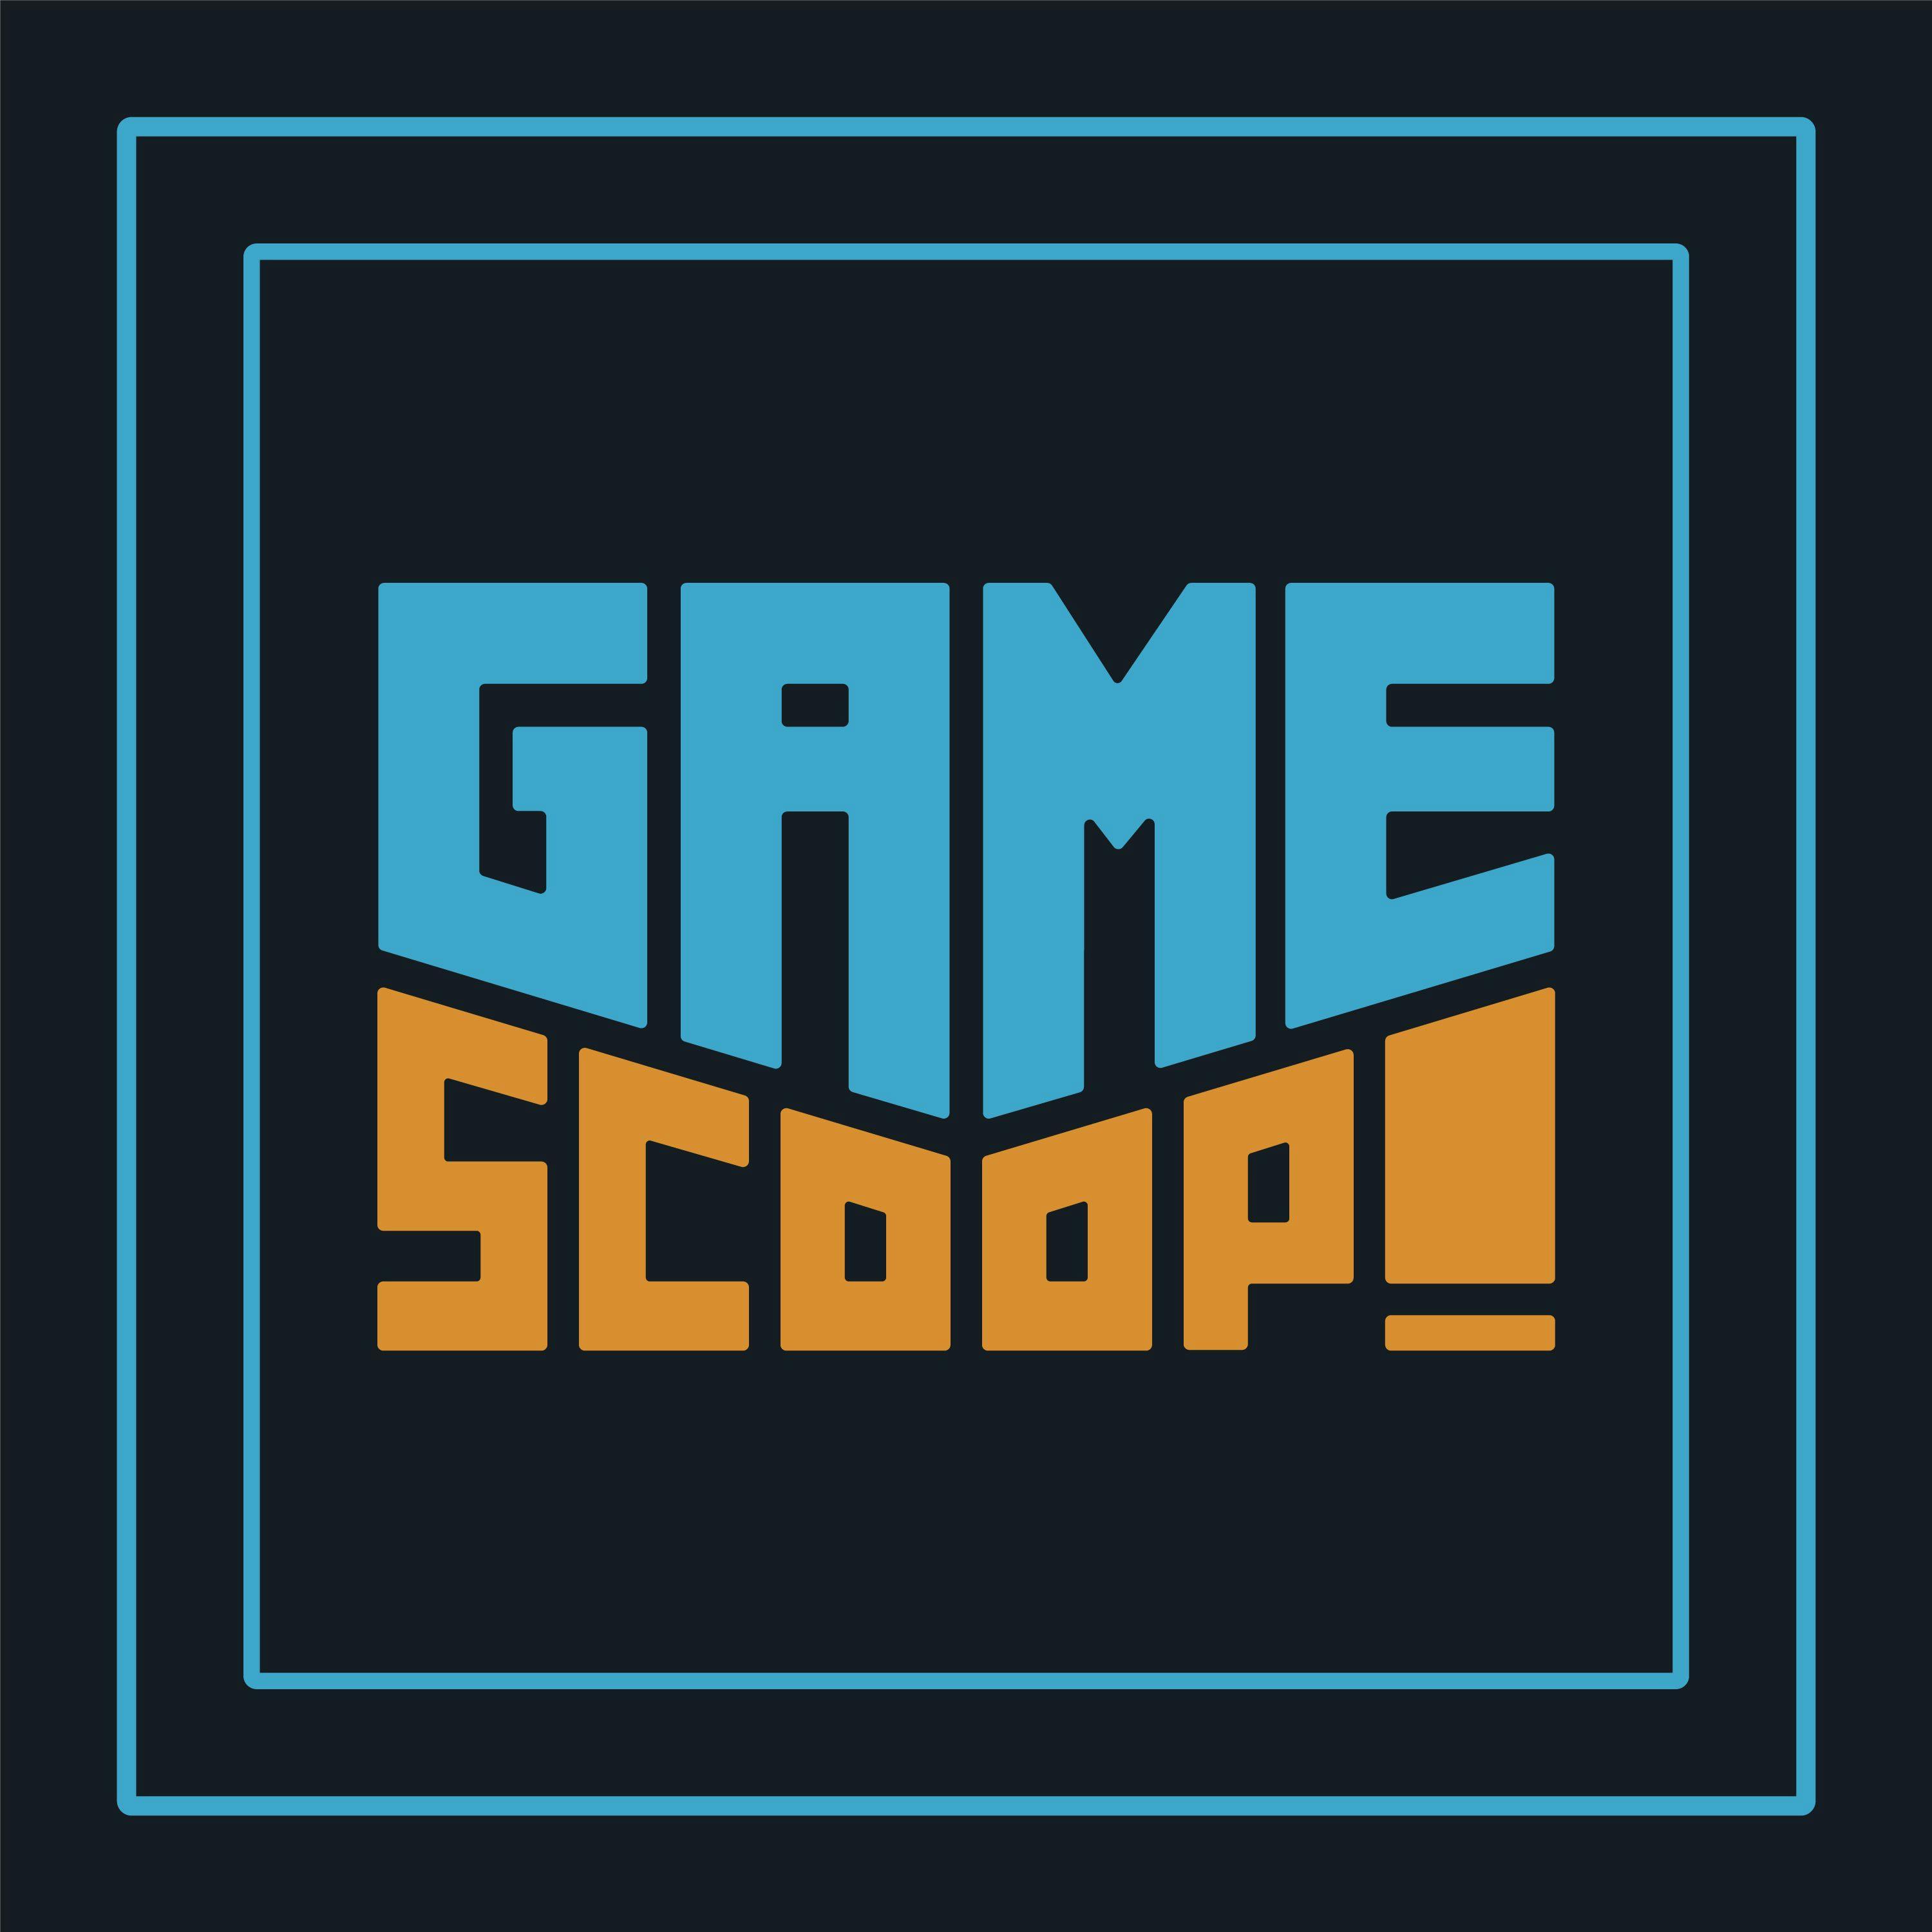 Game Scoop Episode 612